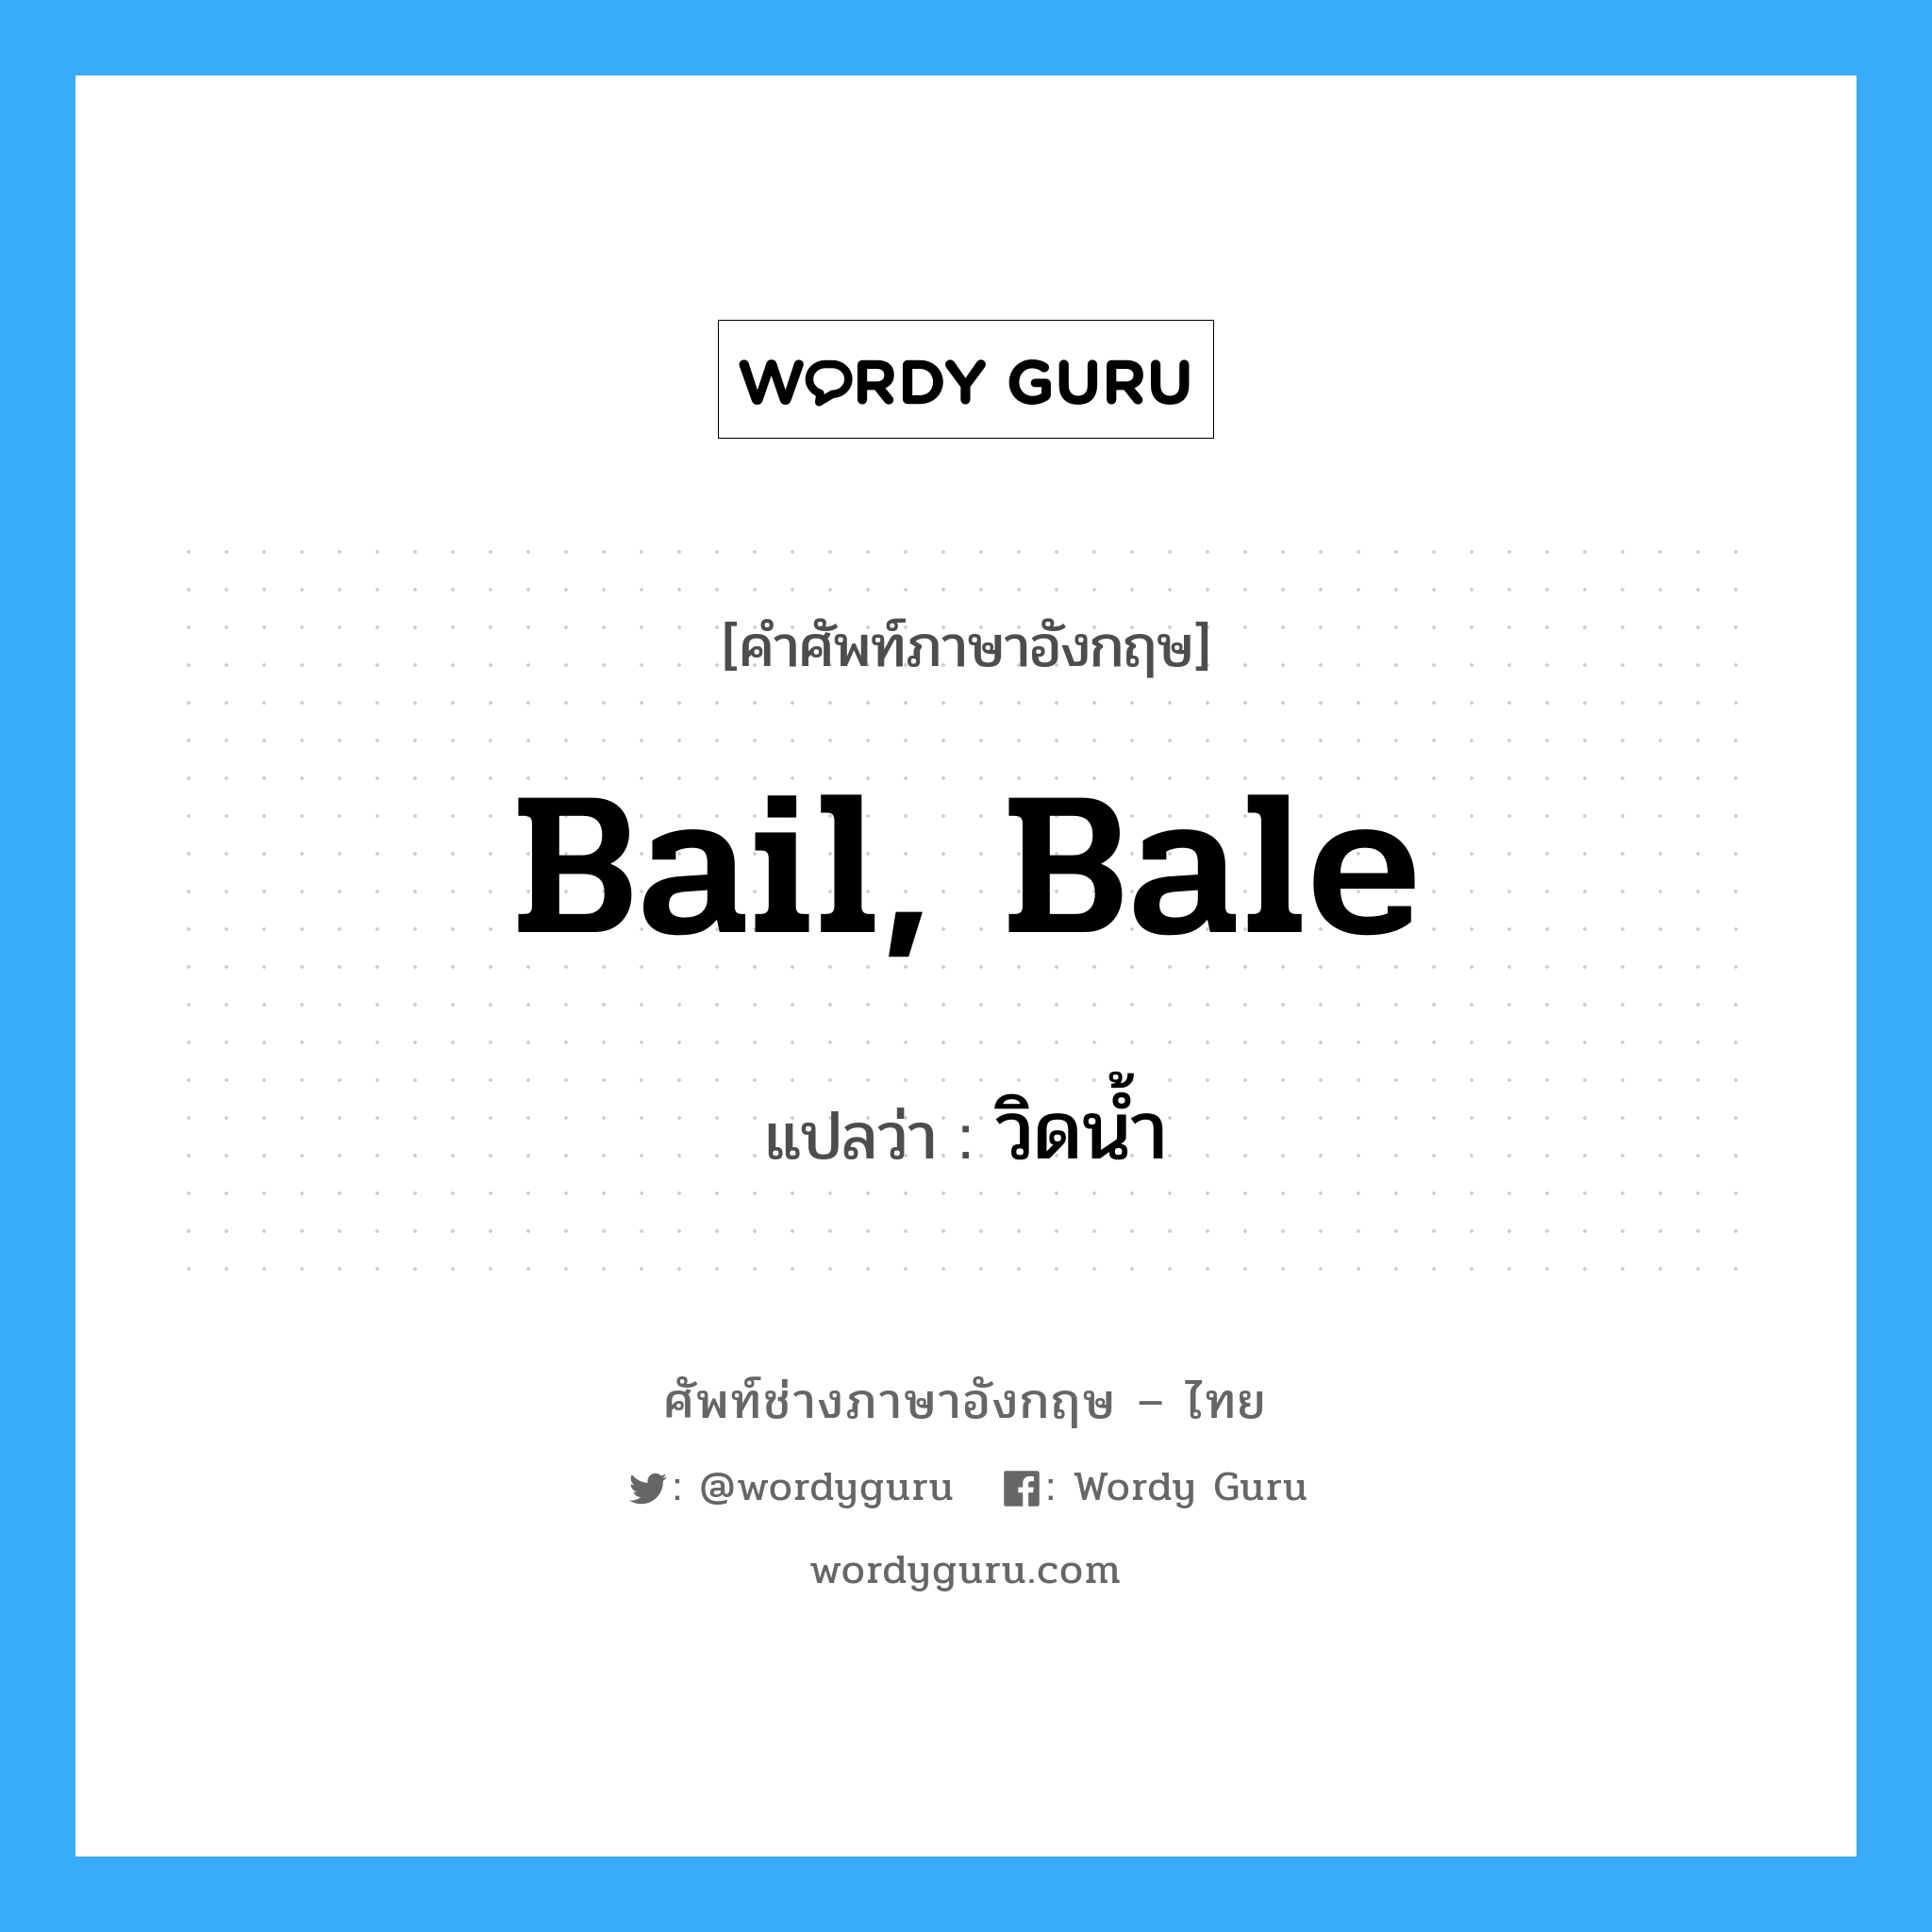 bail, bale แปลว่า?, คำศัพท์ช่างภาษาอังกฤษ - ไทย bail, bale คำศัพท์ภาษาอังกฤษ bail, bale แปลว่า วิดน้ำ